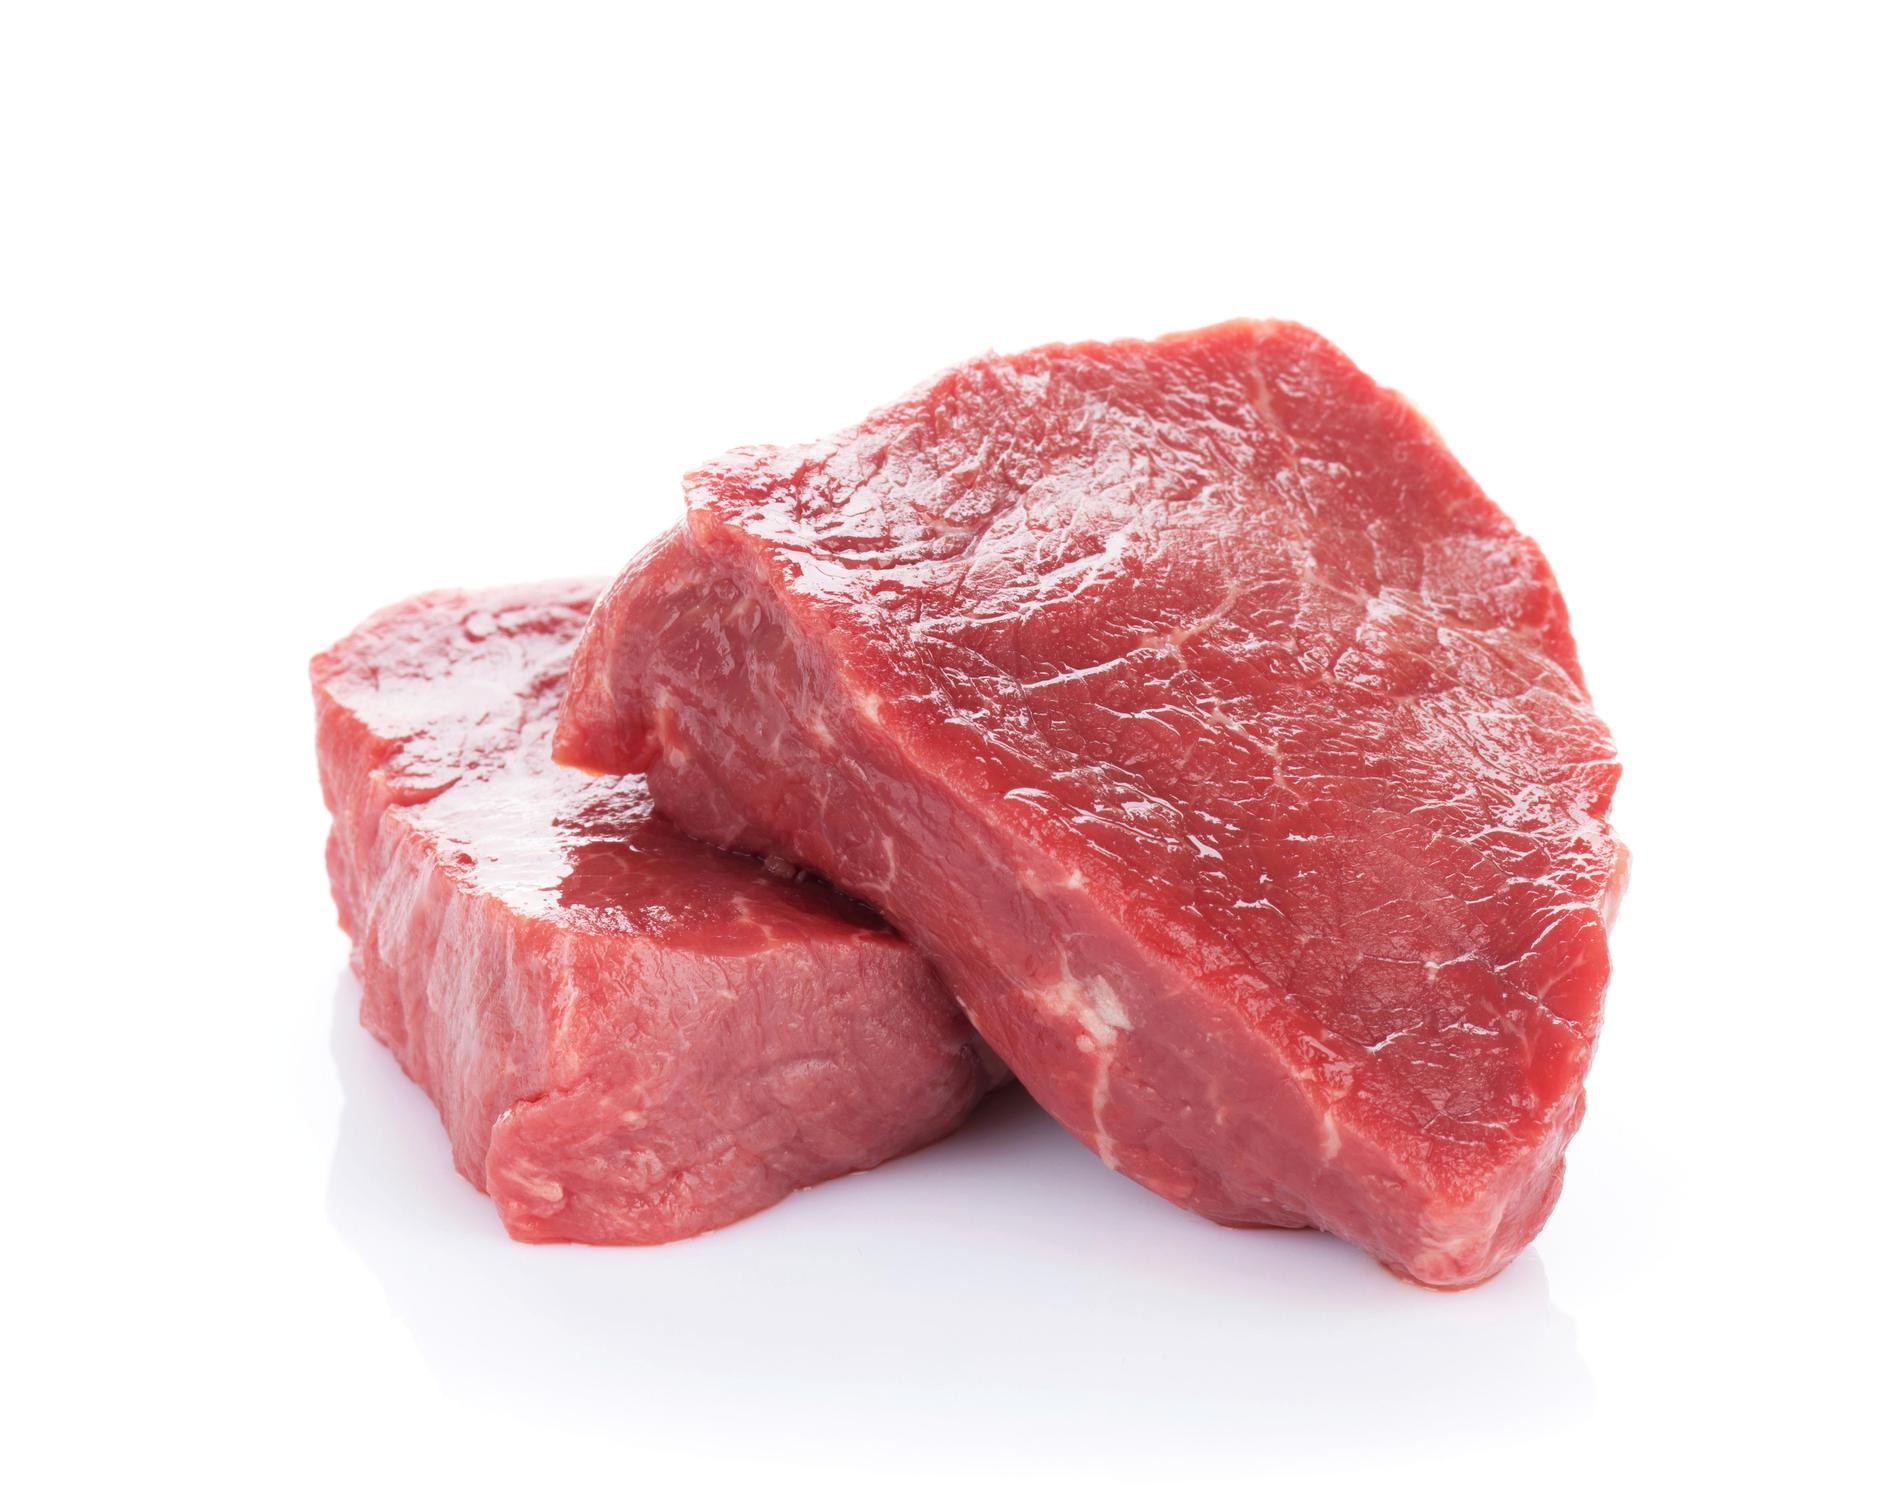 Rött kött är kanske inte lika farligt som man tidigare befarat, enligt en genomgång av studier. Arkivbild.